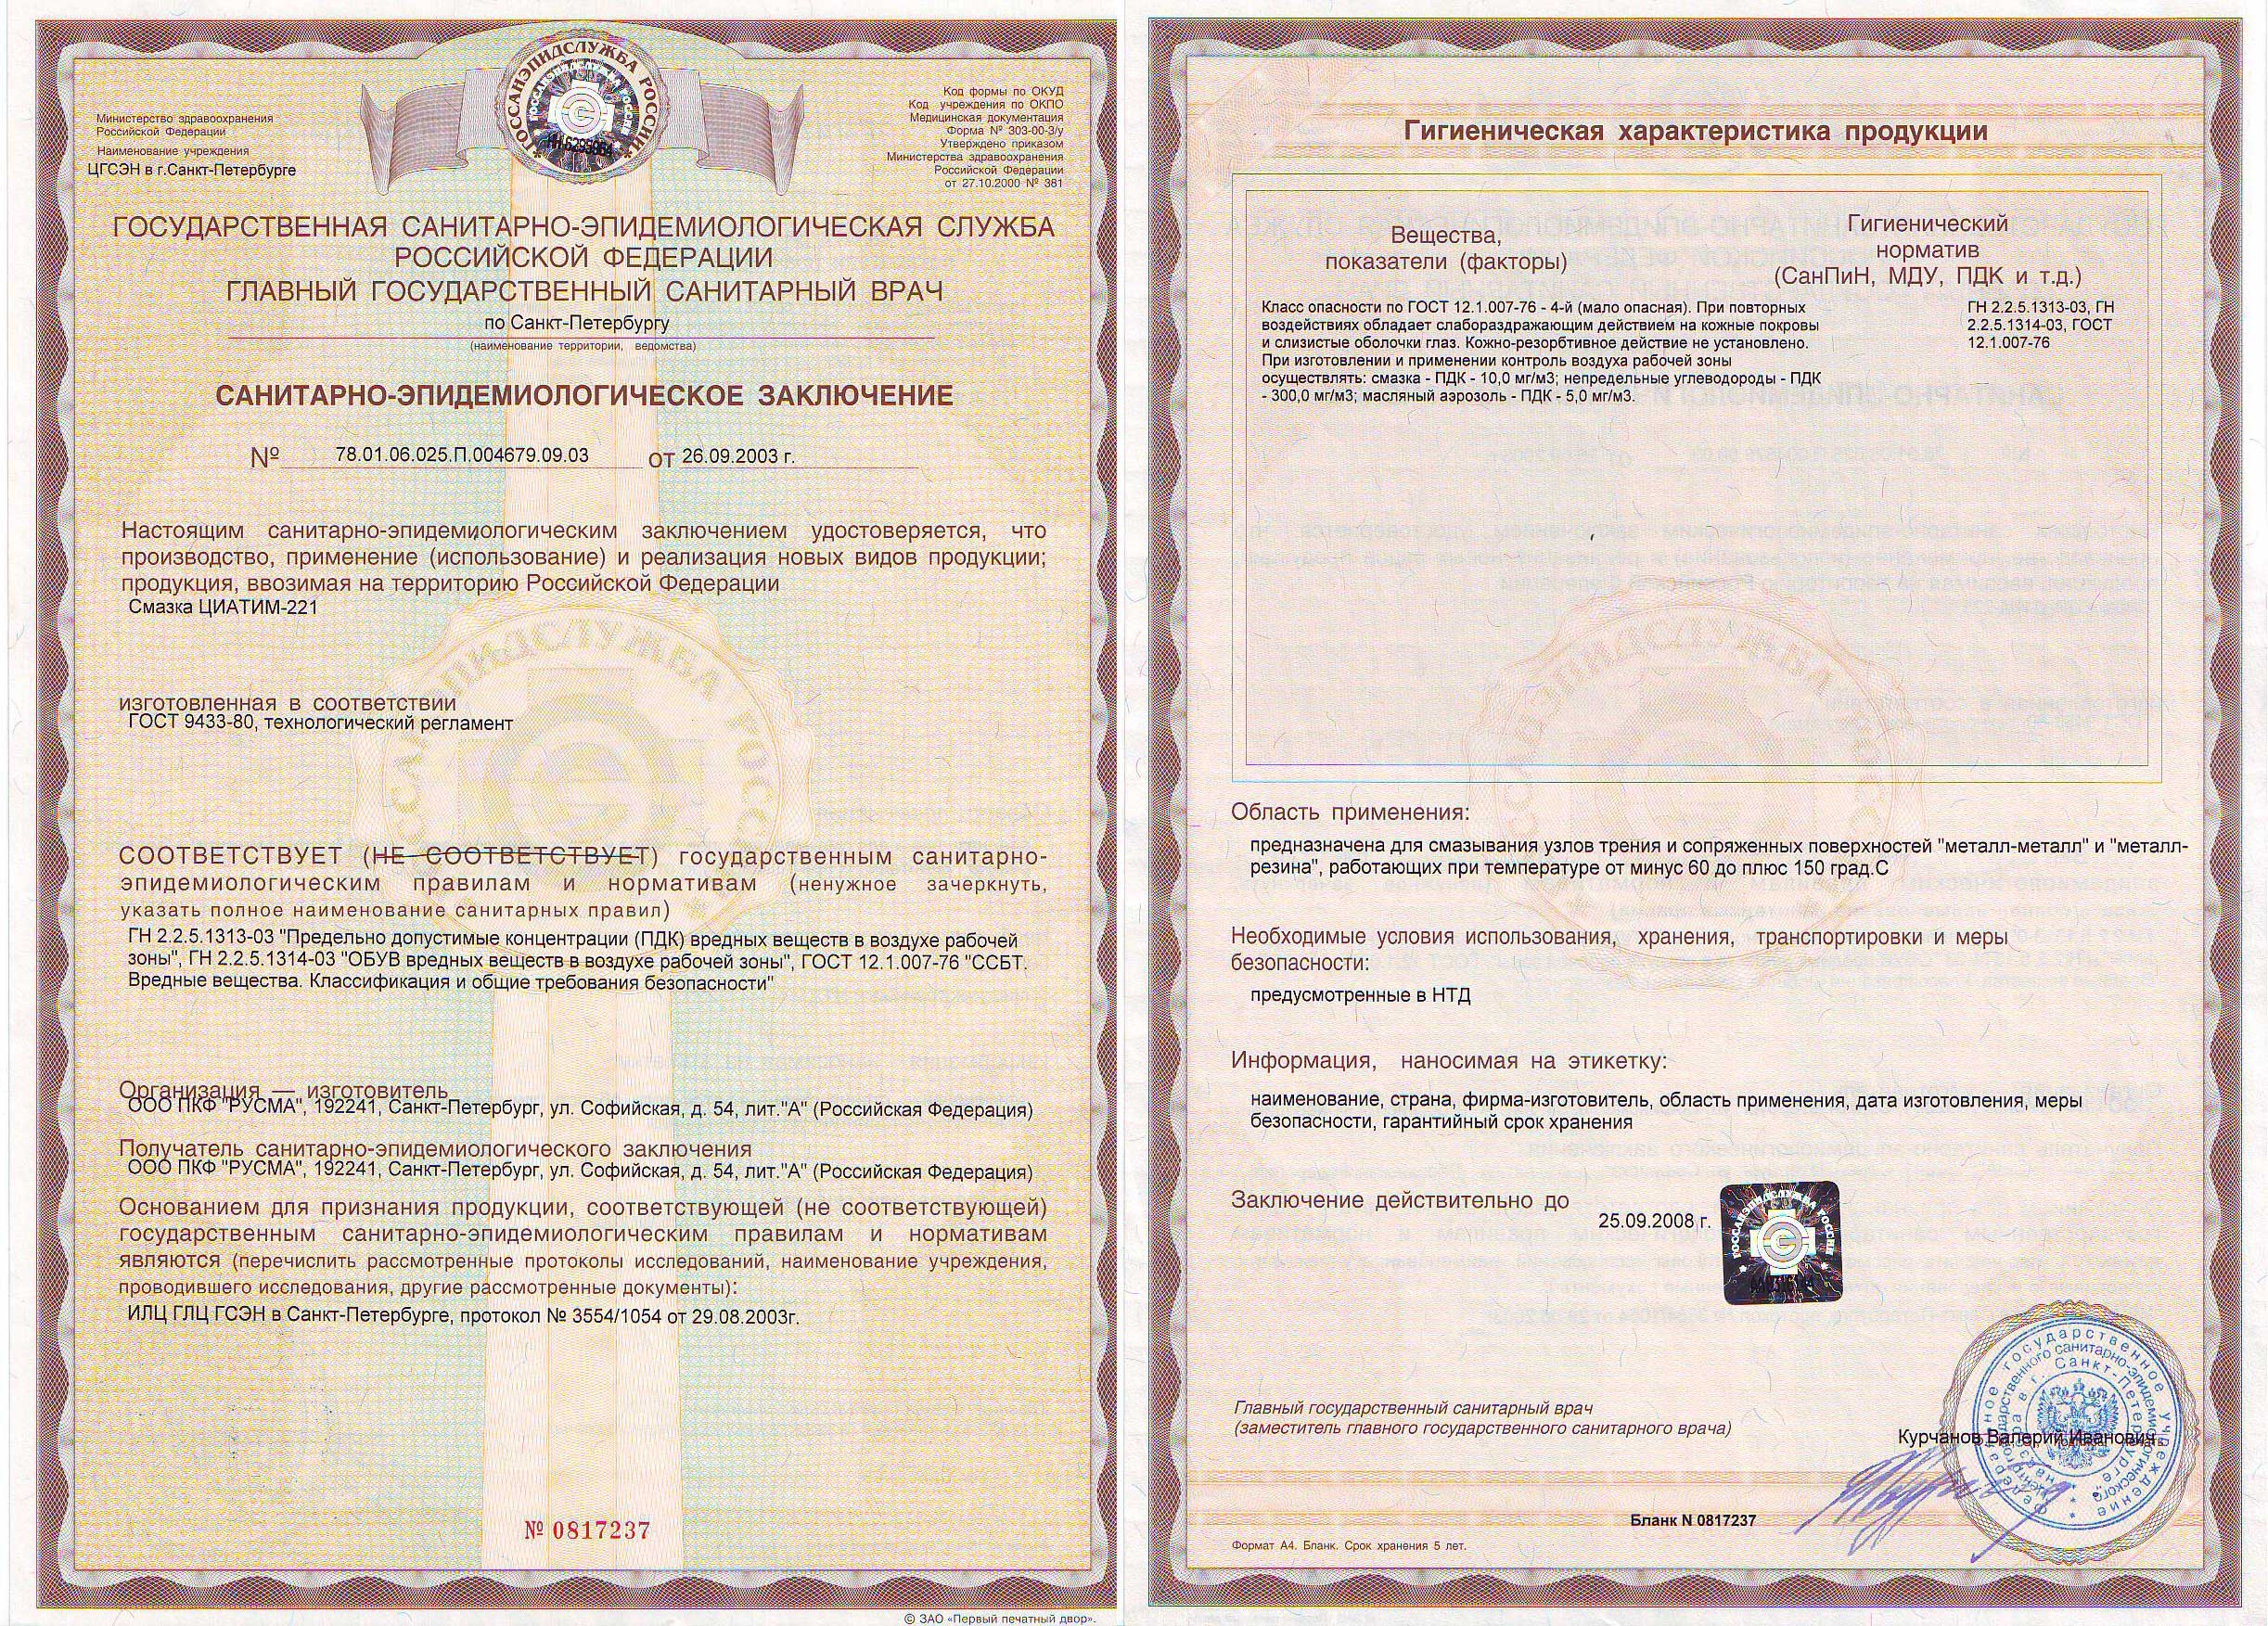 Сертификат На Смазку Циатим 221